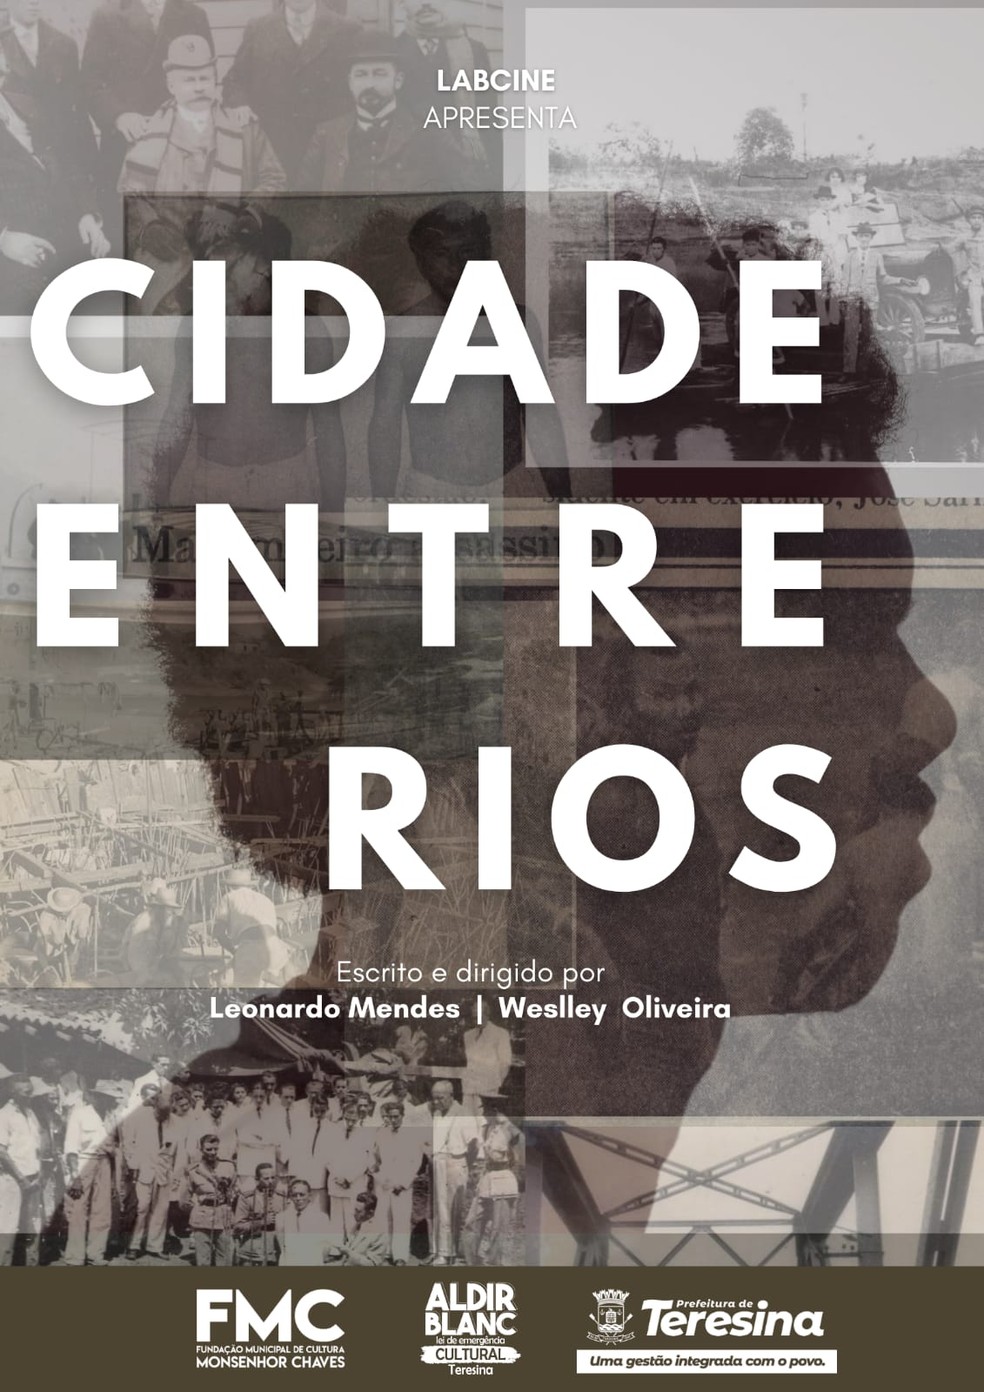 Cartaz do documentário "Cidade Entre Rios", de Leonardo Mendes e Weslley Oliveira, — Foto: Divulgação/ LabCine